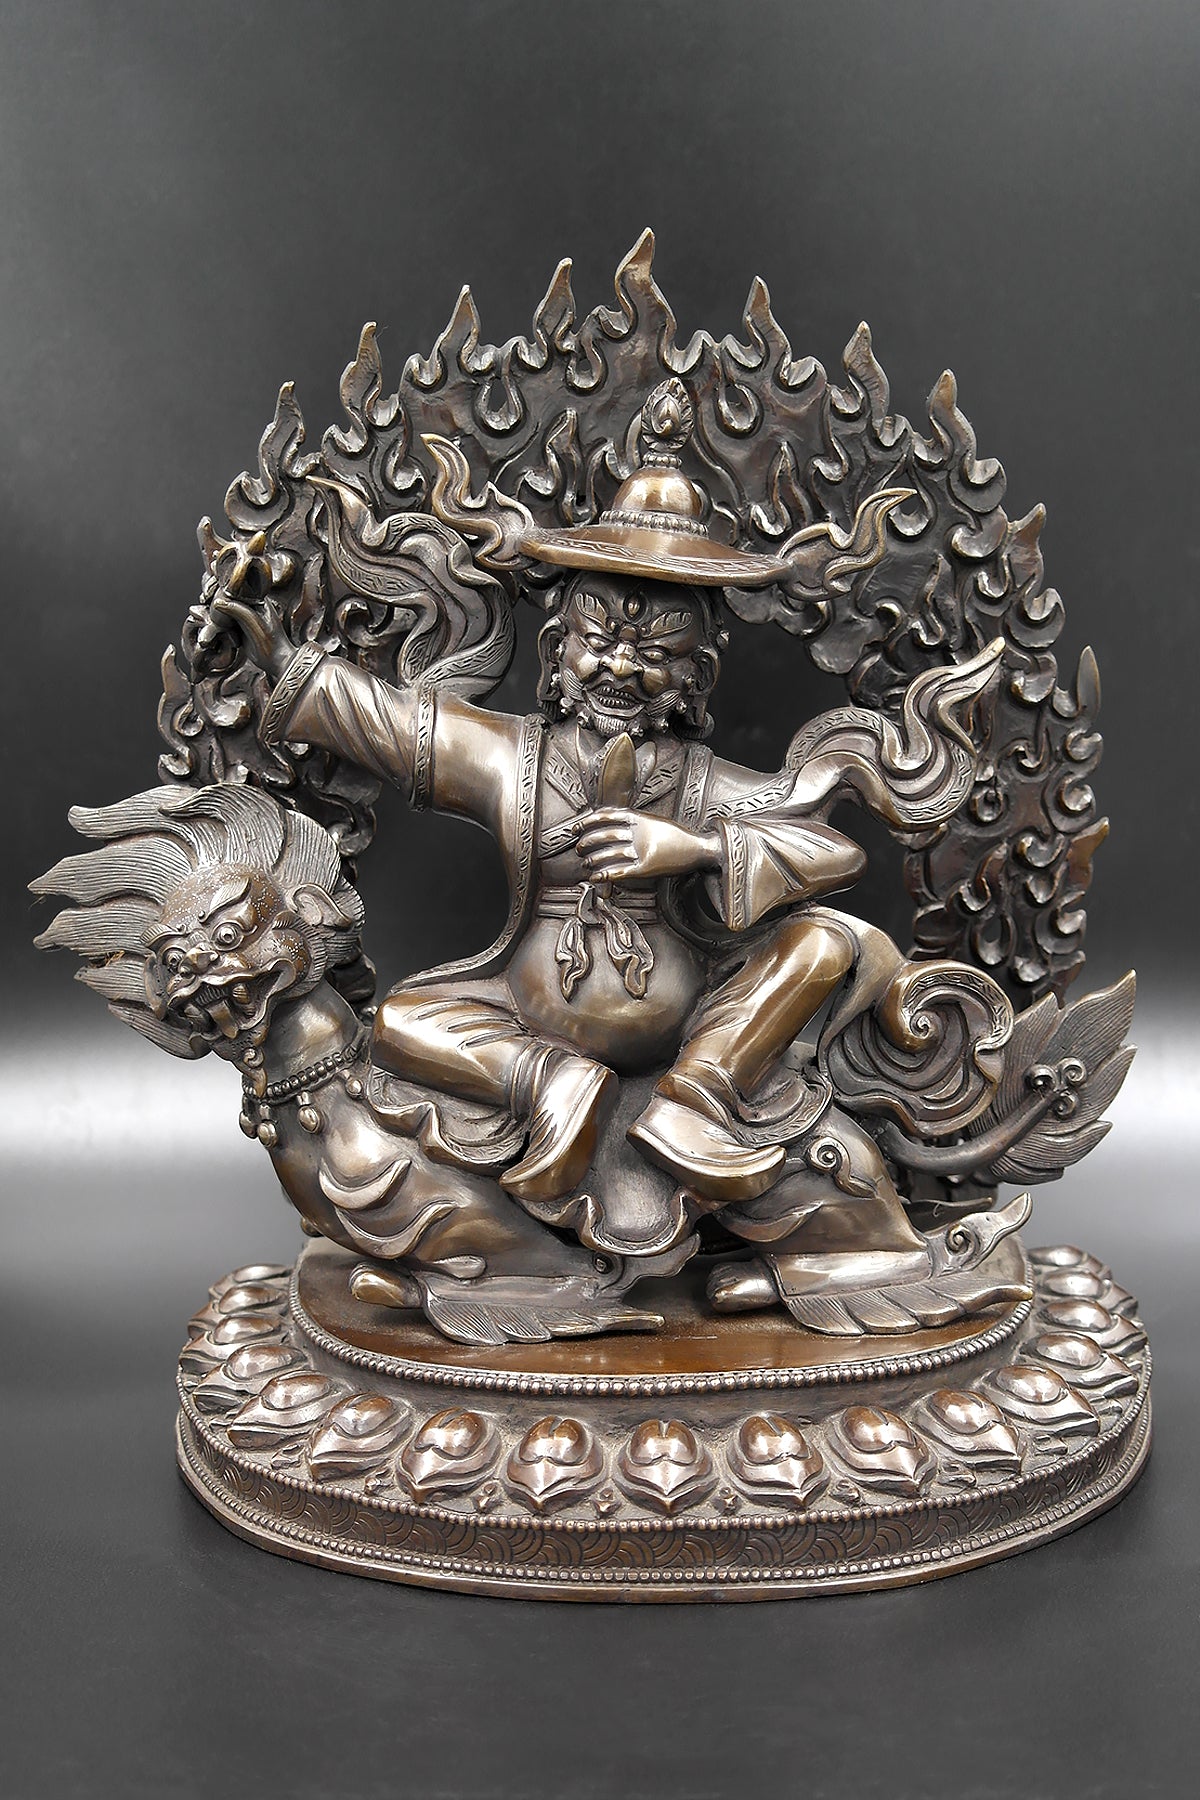 Buddhist Protector Dorje Legpa or Vajra Sadhu copper statue 10"